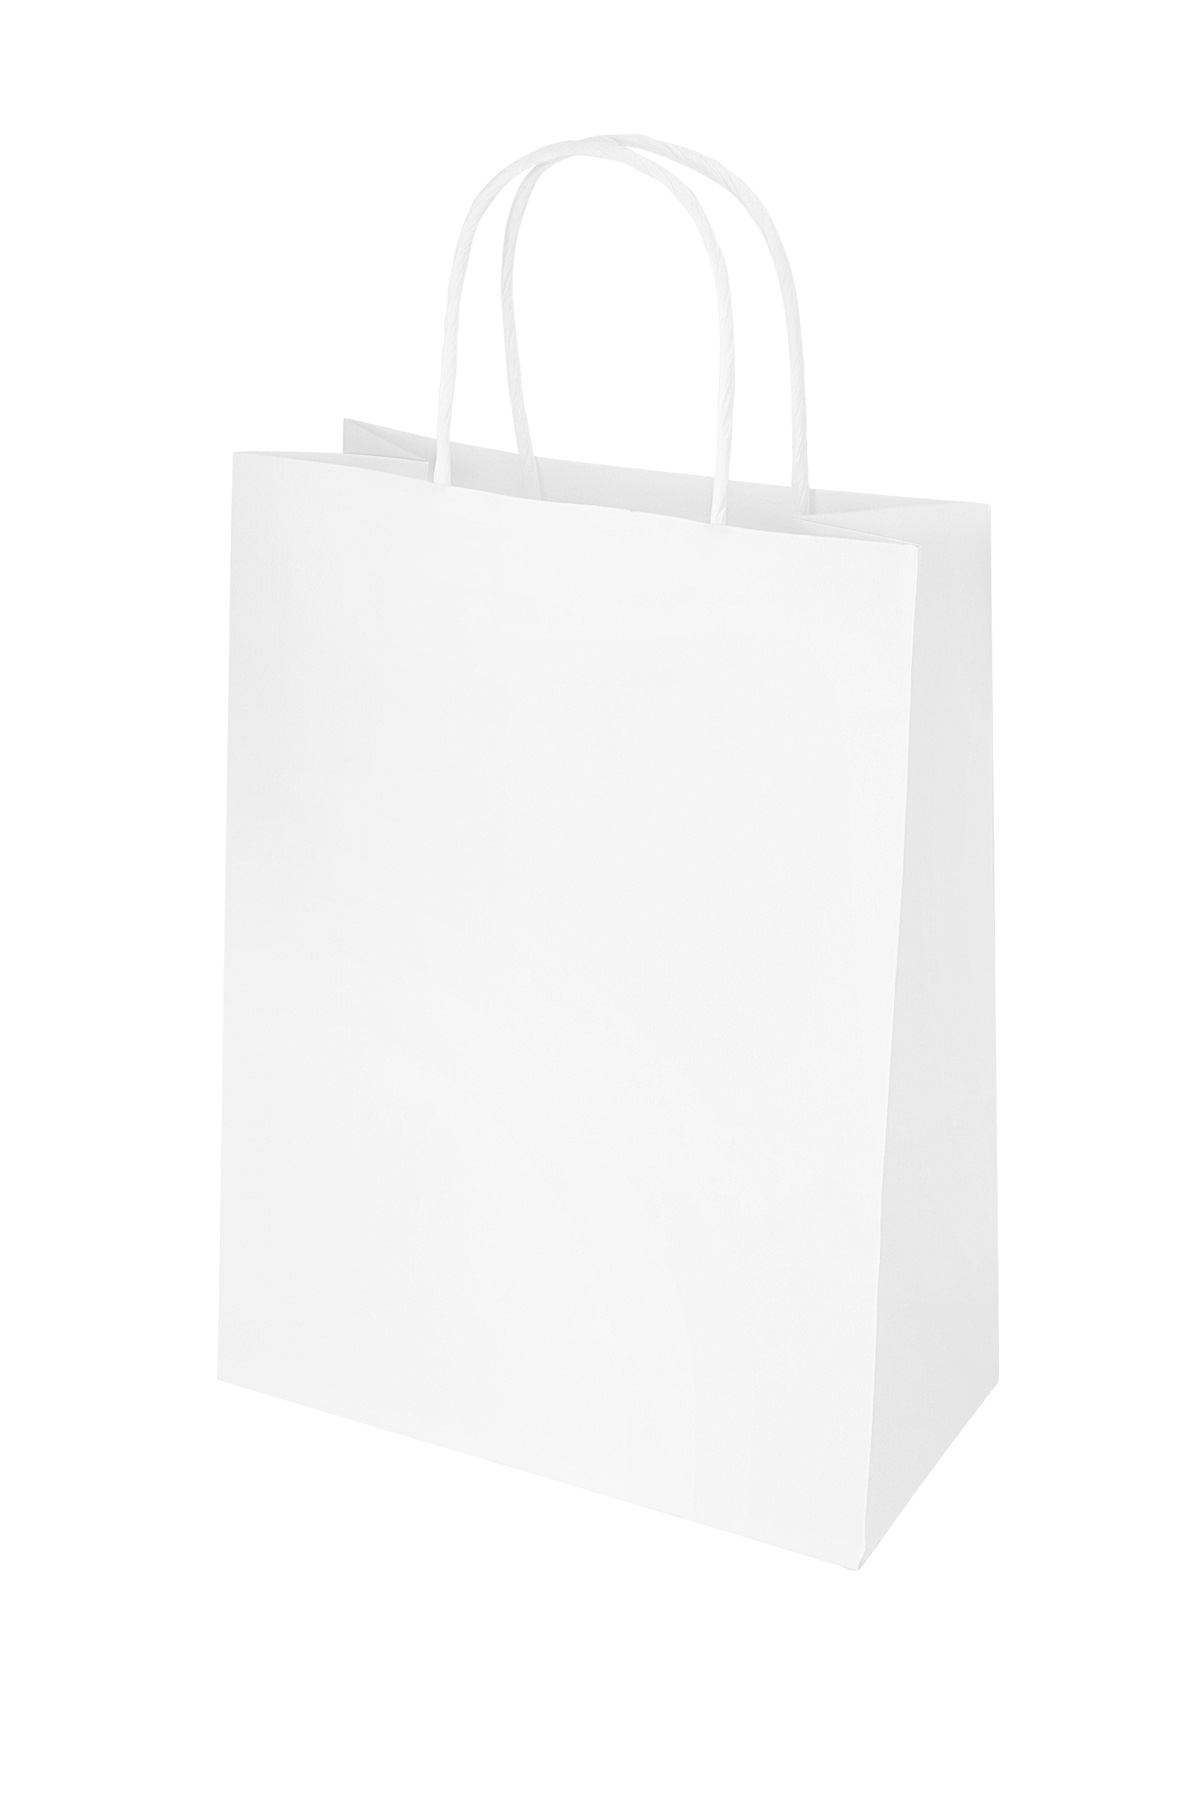 Bags plain 50 pieces large - white Paper 